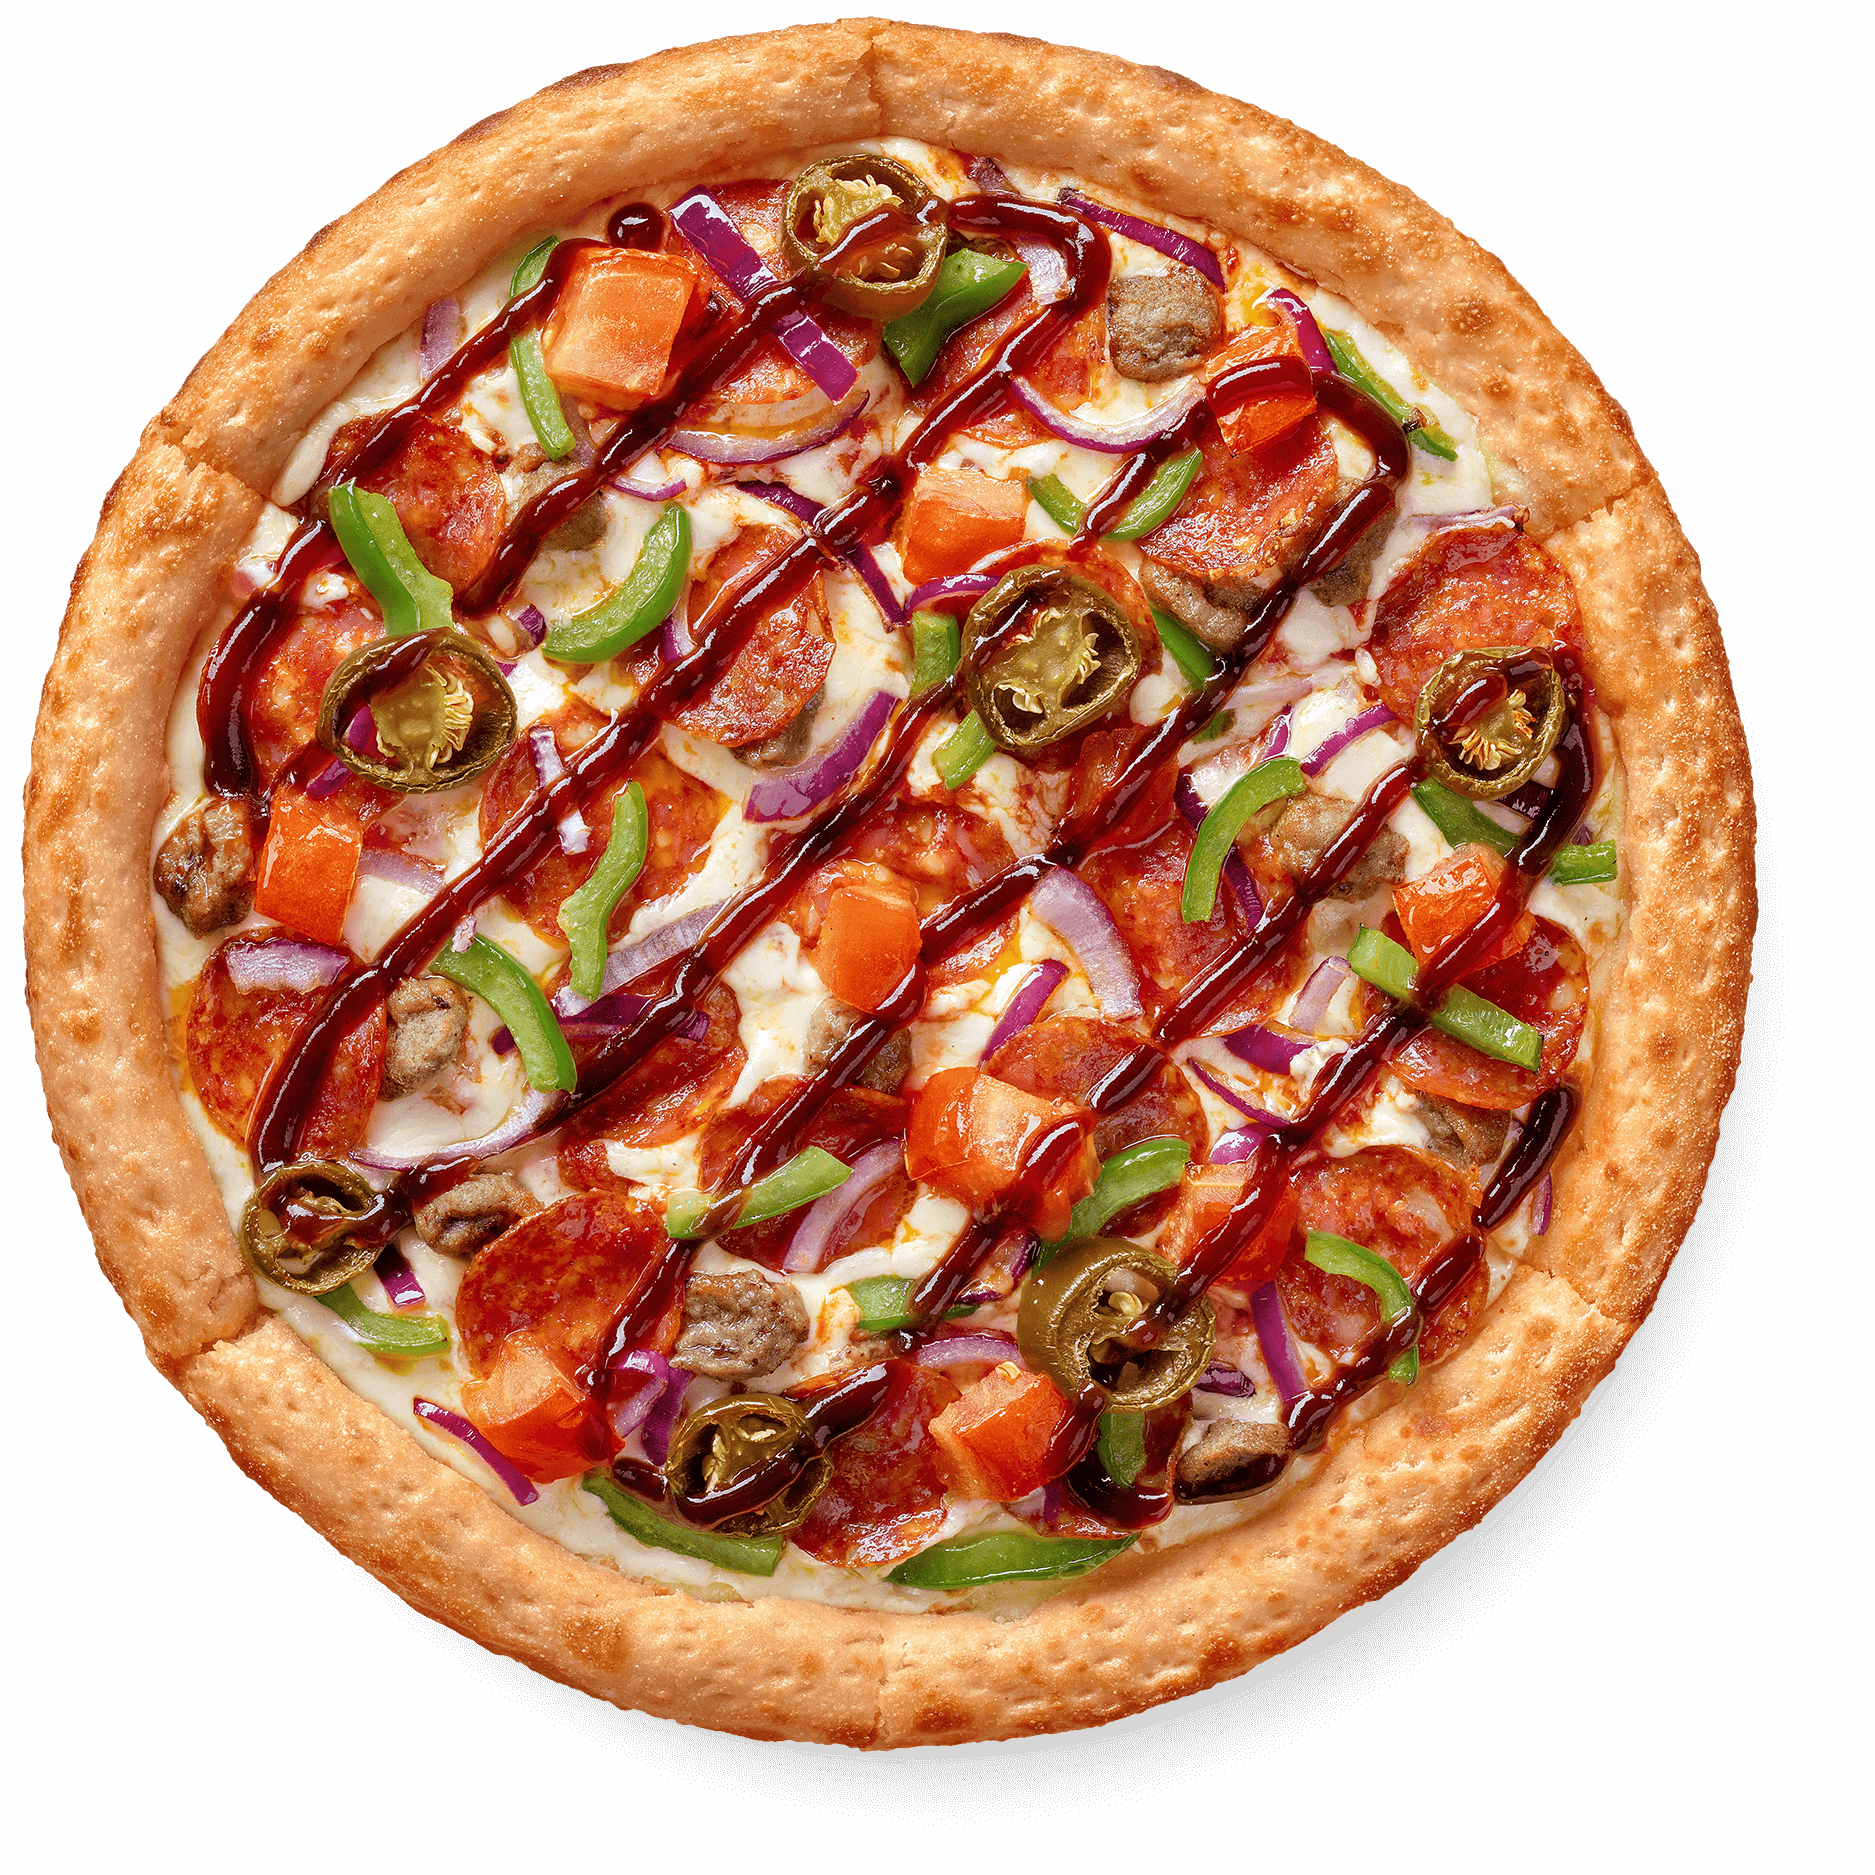 сколько калорий в одном кусочке пиццы пепперони додо фото 55